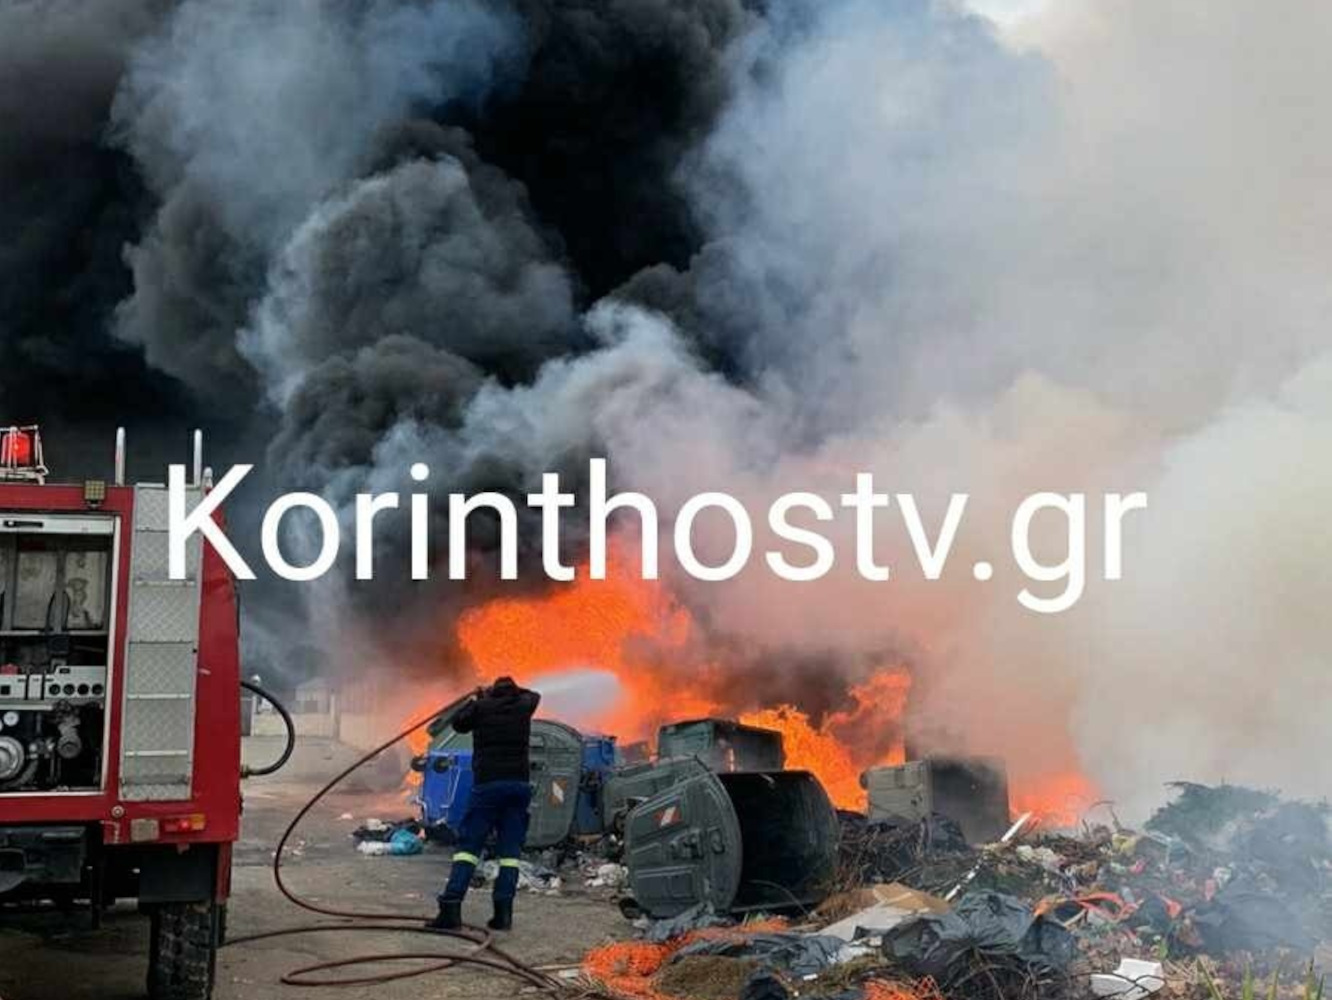 Κορινθία: Έσβησε η φωτιά στο εργοτάξιο του Δήμου Βέλου – Βόχας, καταγγελίες για εμπρησμό